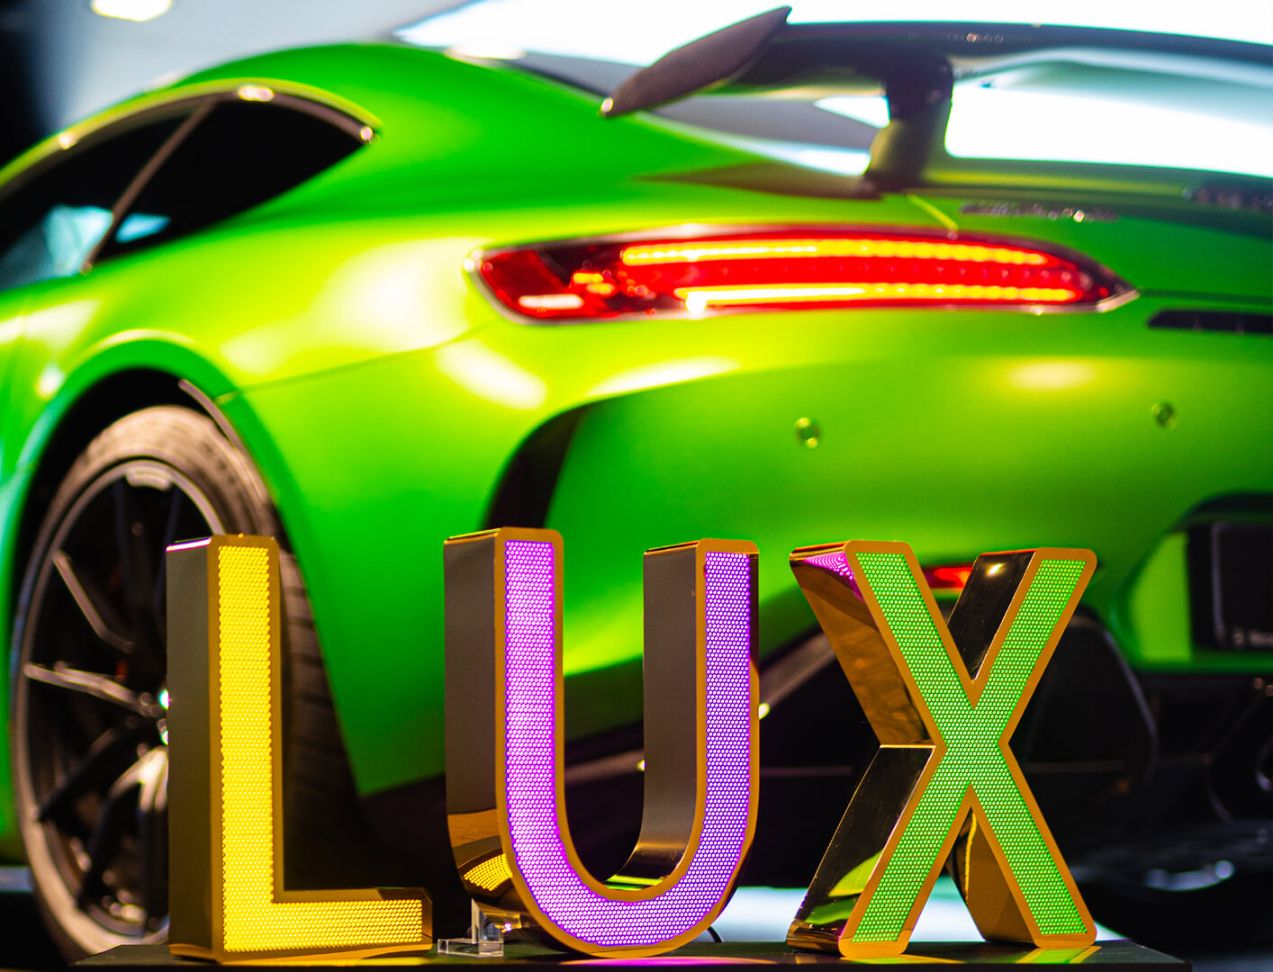 LUX geperforeerde roestvrijstalen letters - LUX-letters in goudglanzend geperforeerd roestvrij staal, LED-achtergrondverlichting, in Mercedes-showroom